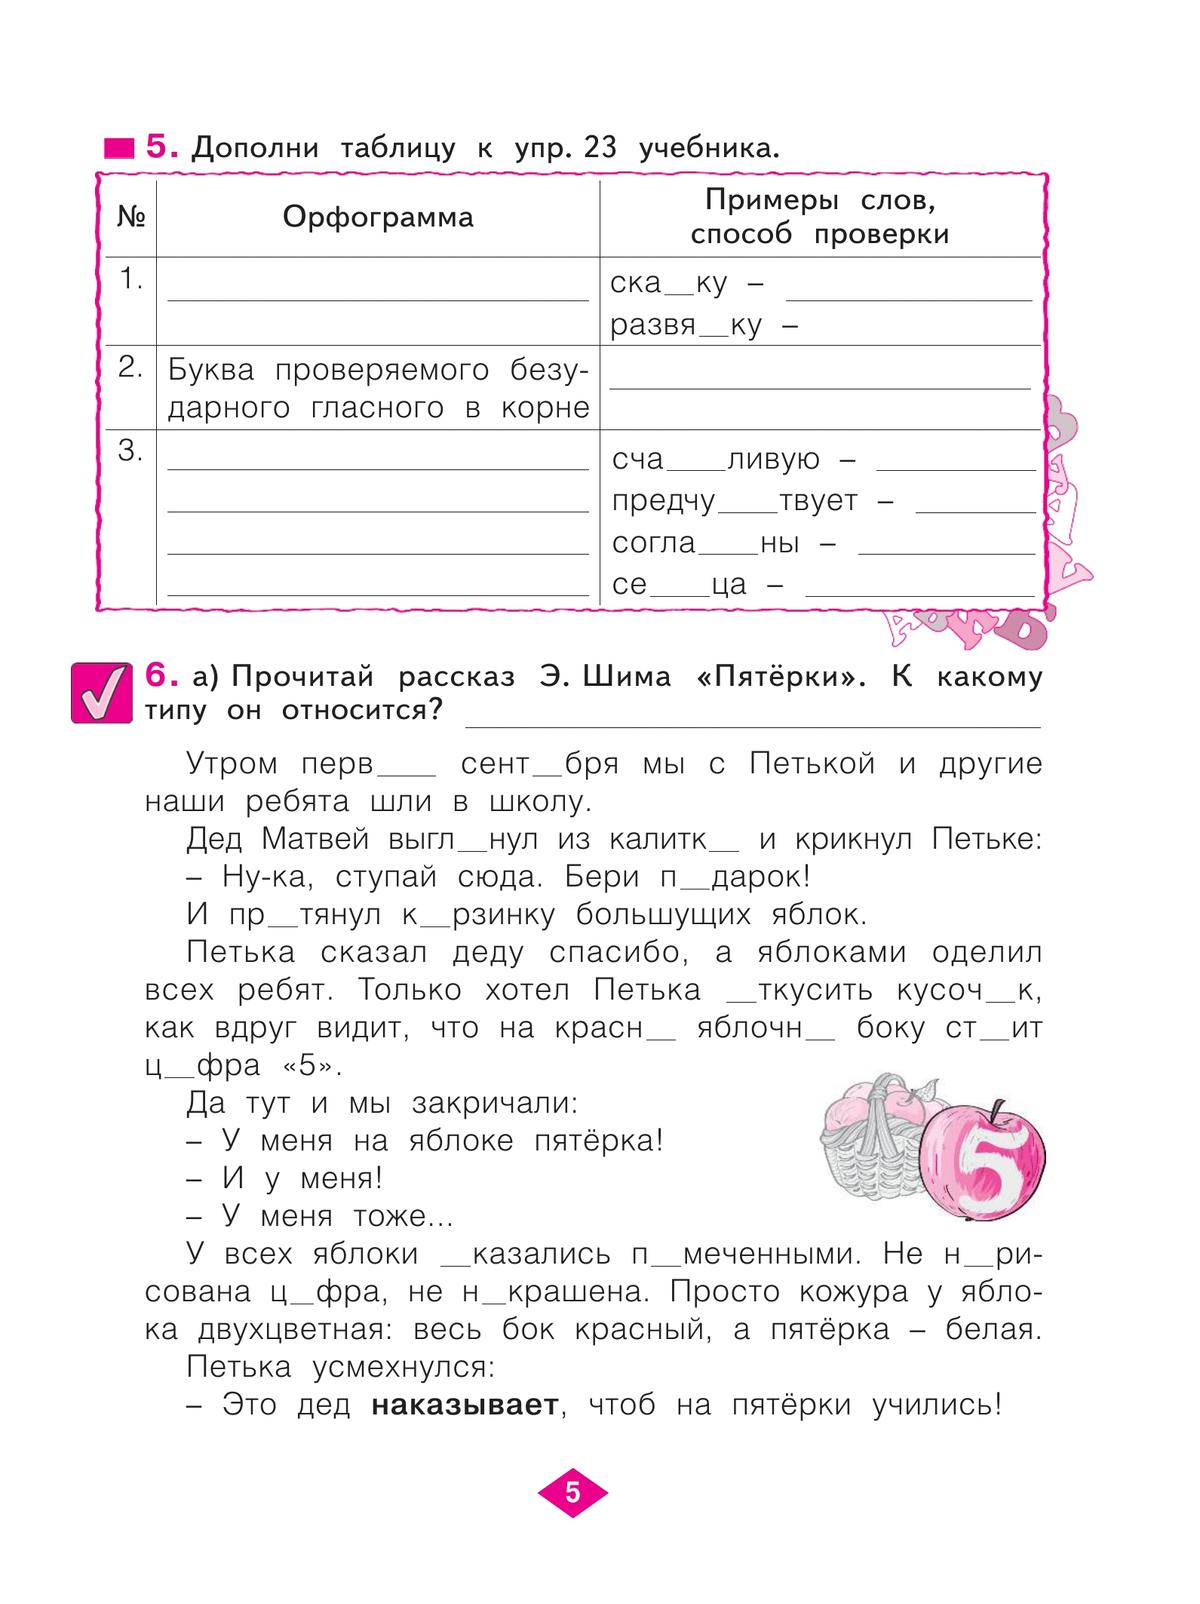 Русский язык. Рабочая тетрадь. 4 класс. В 4-х частях. Часть 1 3